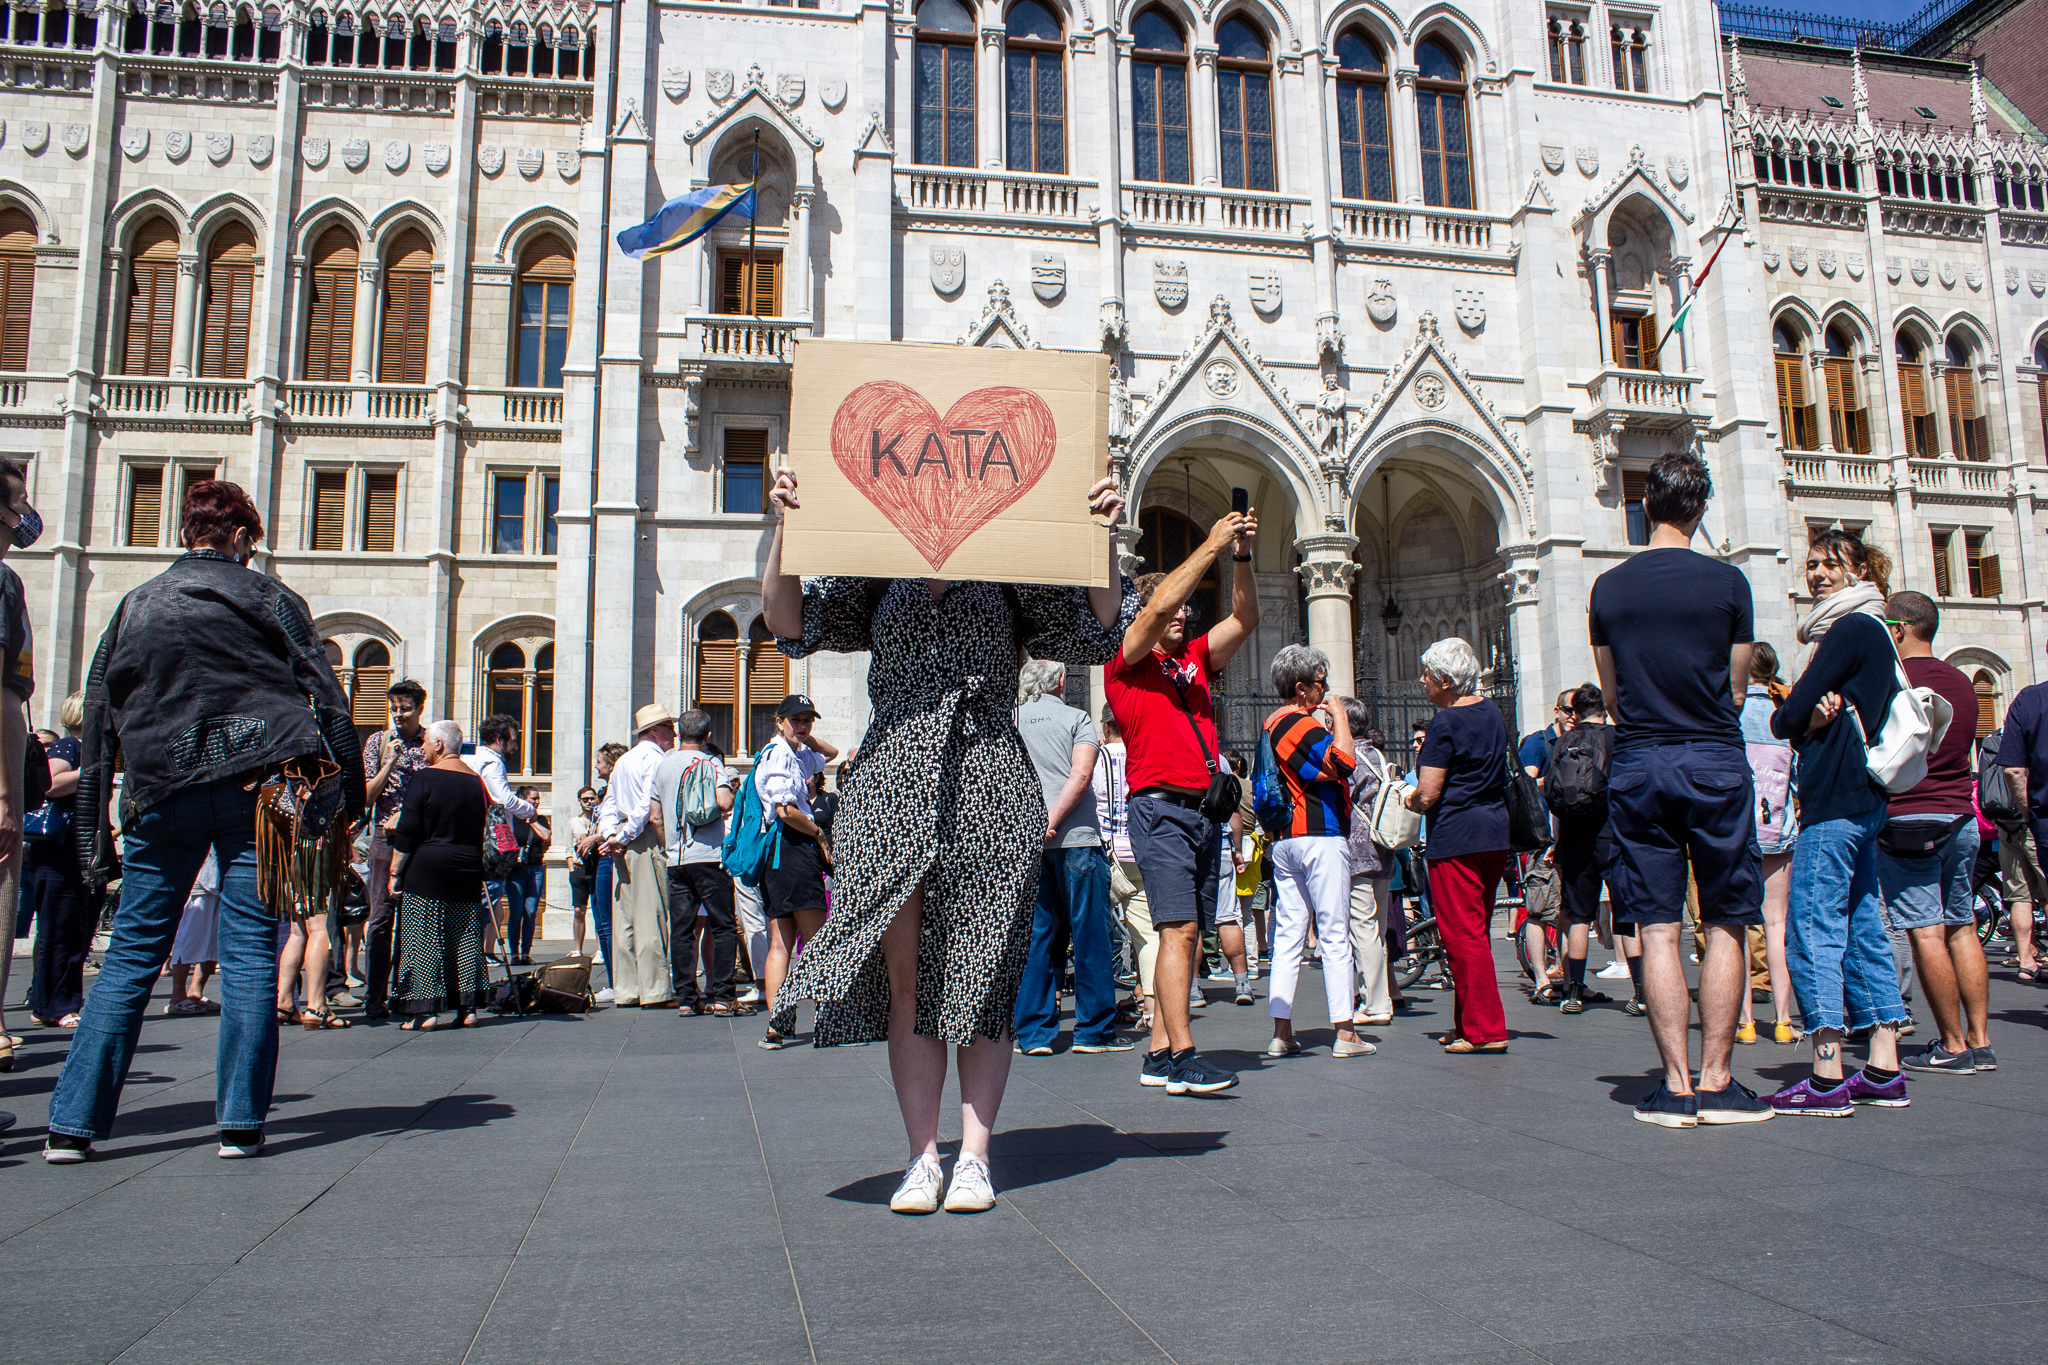 Piros szív rajzra írt KATA felirat egy transzparensen egy lány kezében a katatörvény módosítása elleni tüntetésen